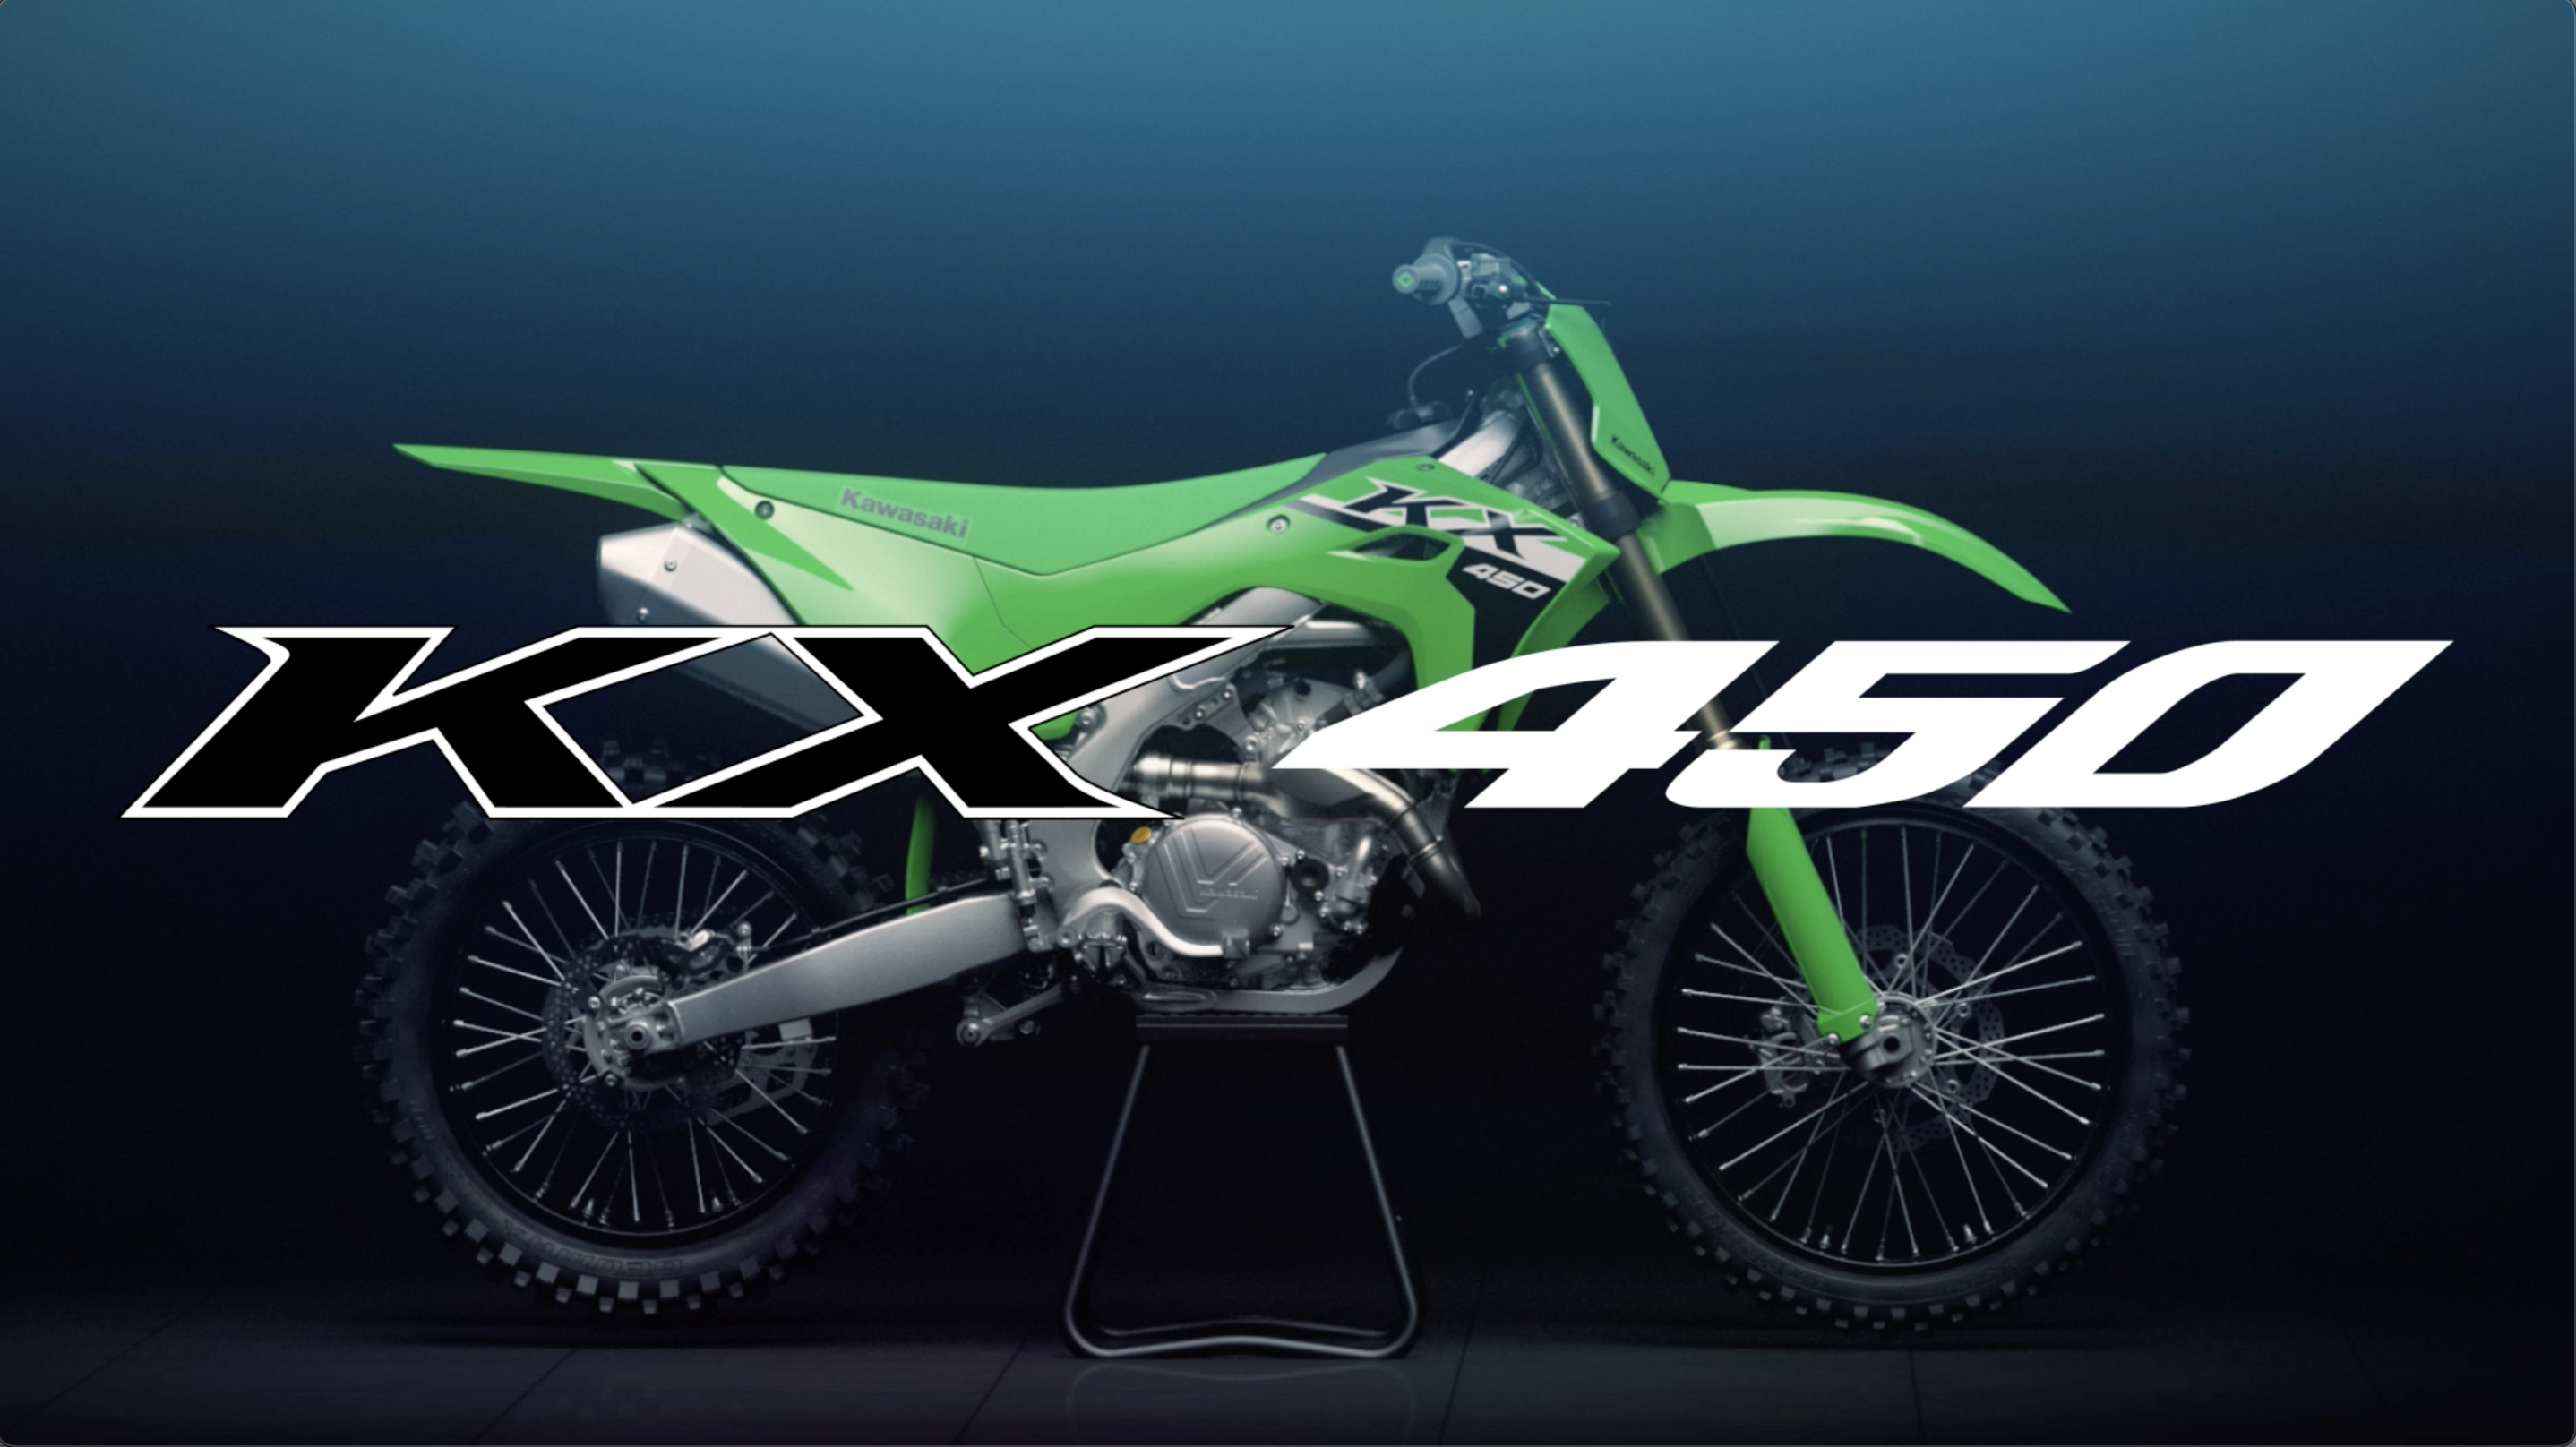 Kawasaki KX450 | 競技用車両|もっともパワフルなモトクロッサー